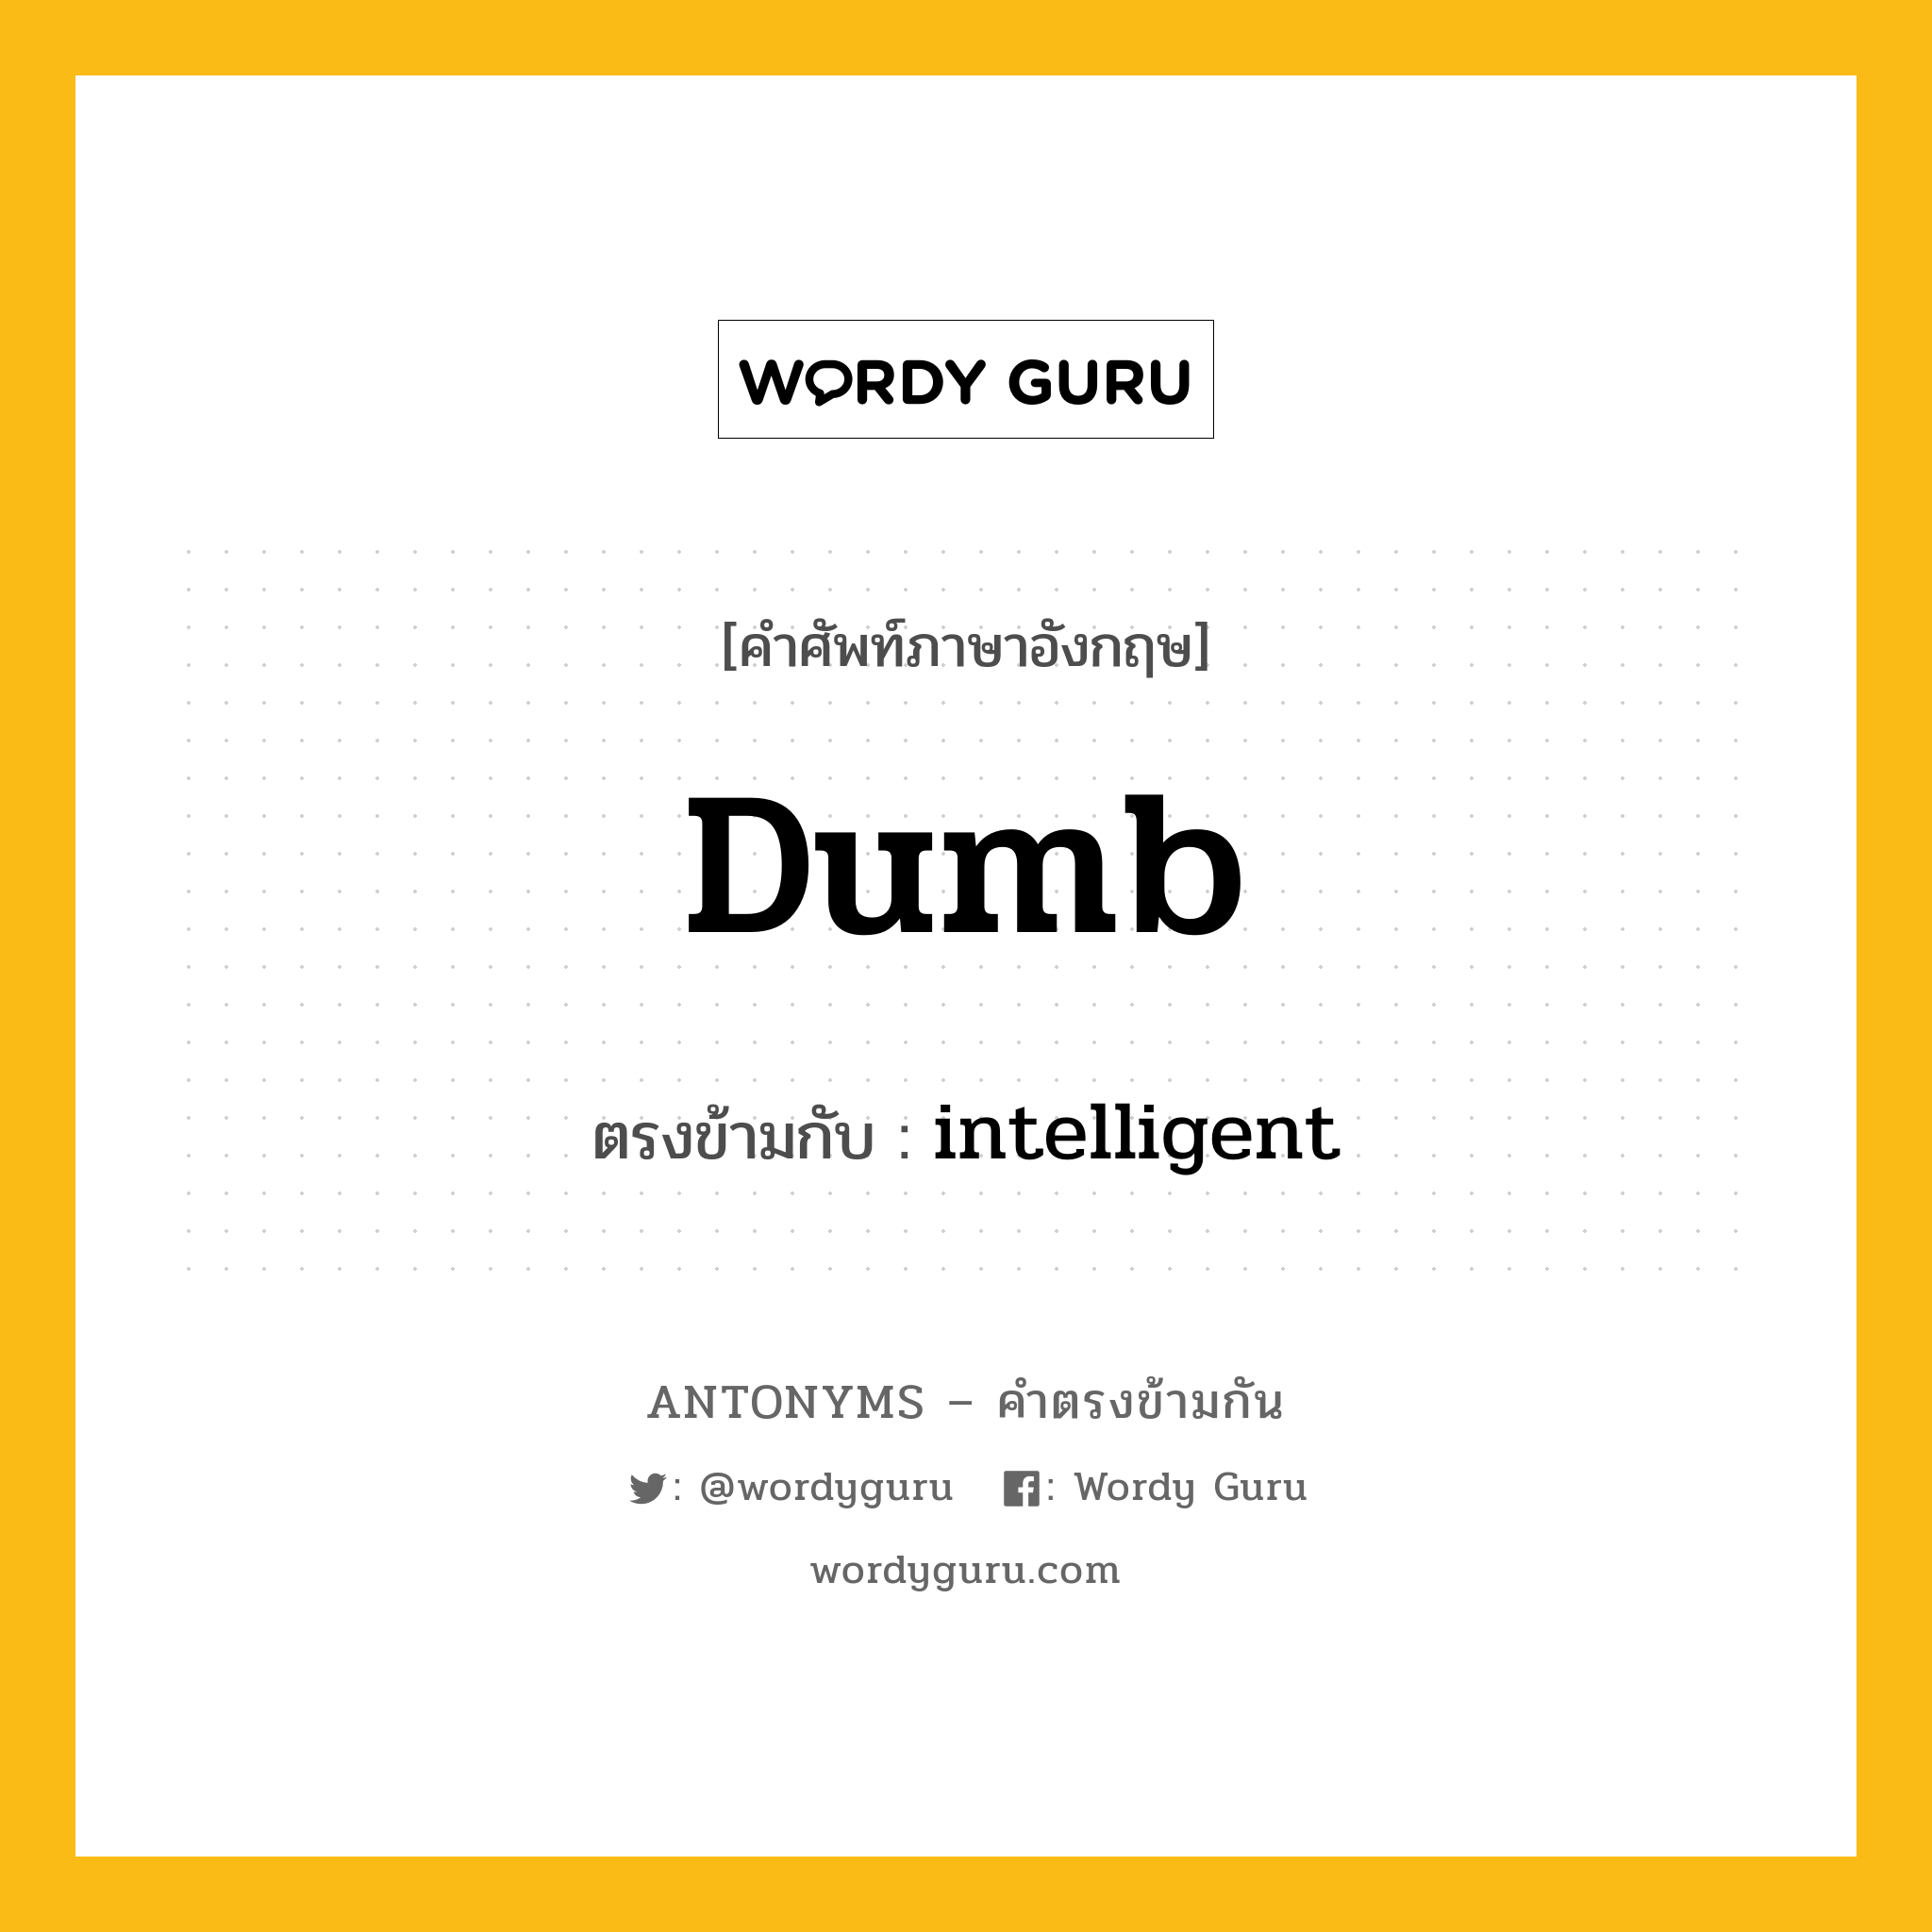 dumb เป็นคำตรงข้ามกับคำไหนบ้าง?, คำศัพท์ภาษาอังกฤษ dumb ตรงข้ามกับ intelligent หมวด intelligent